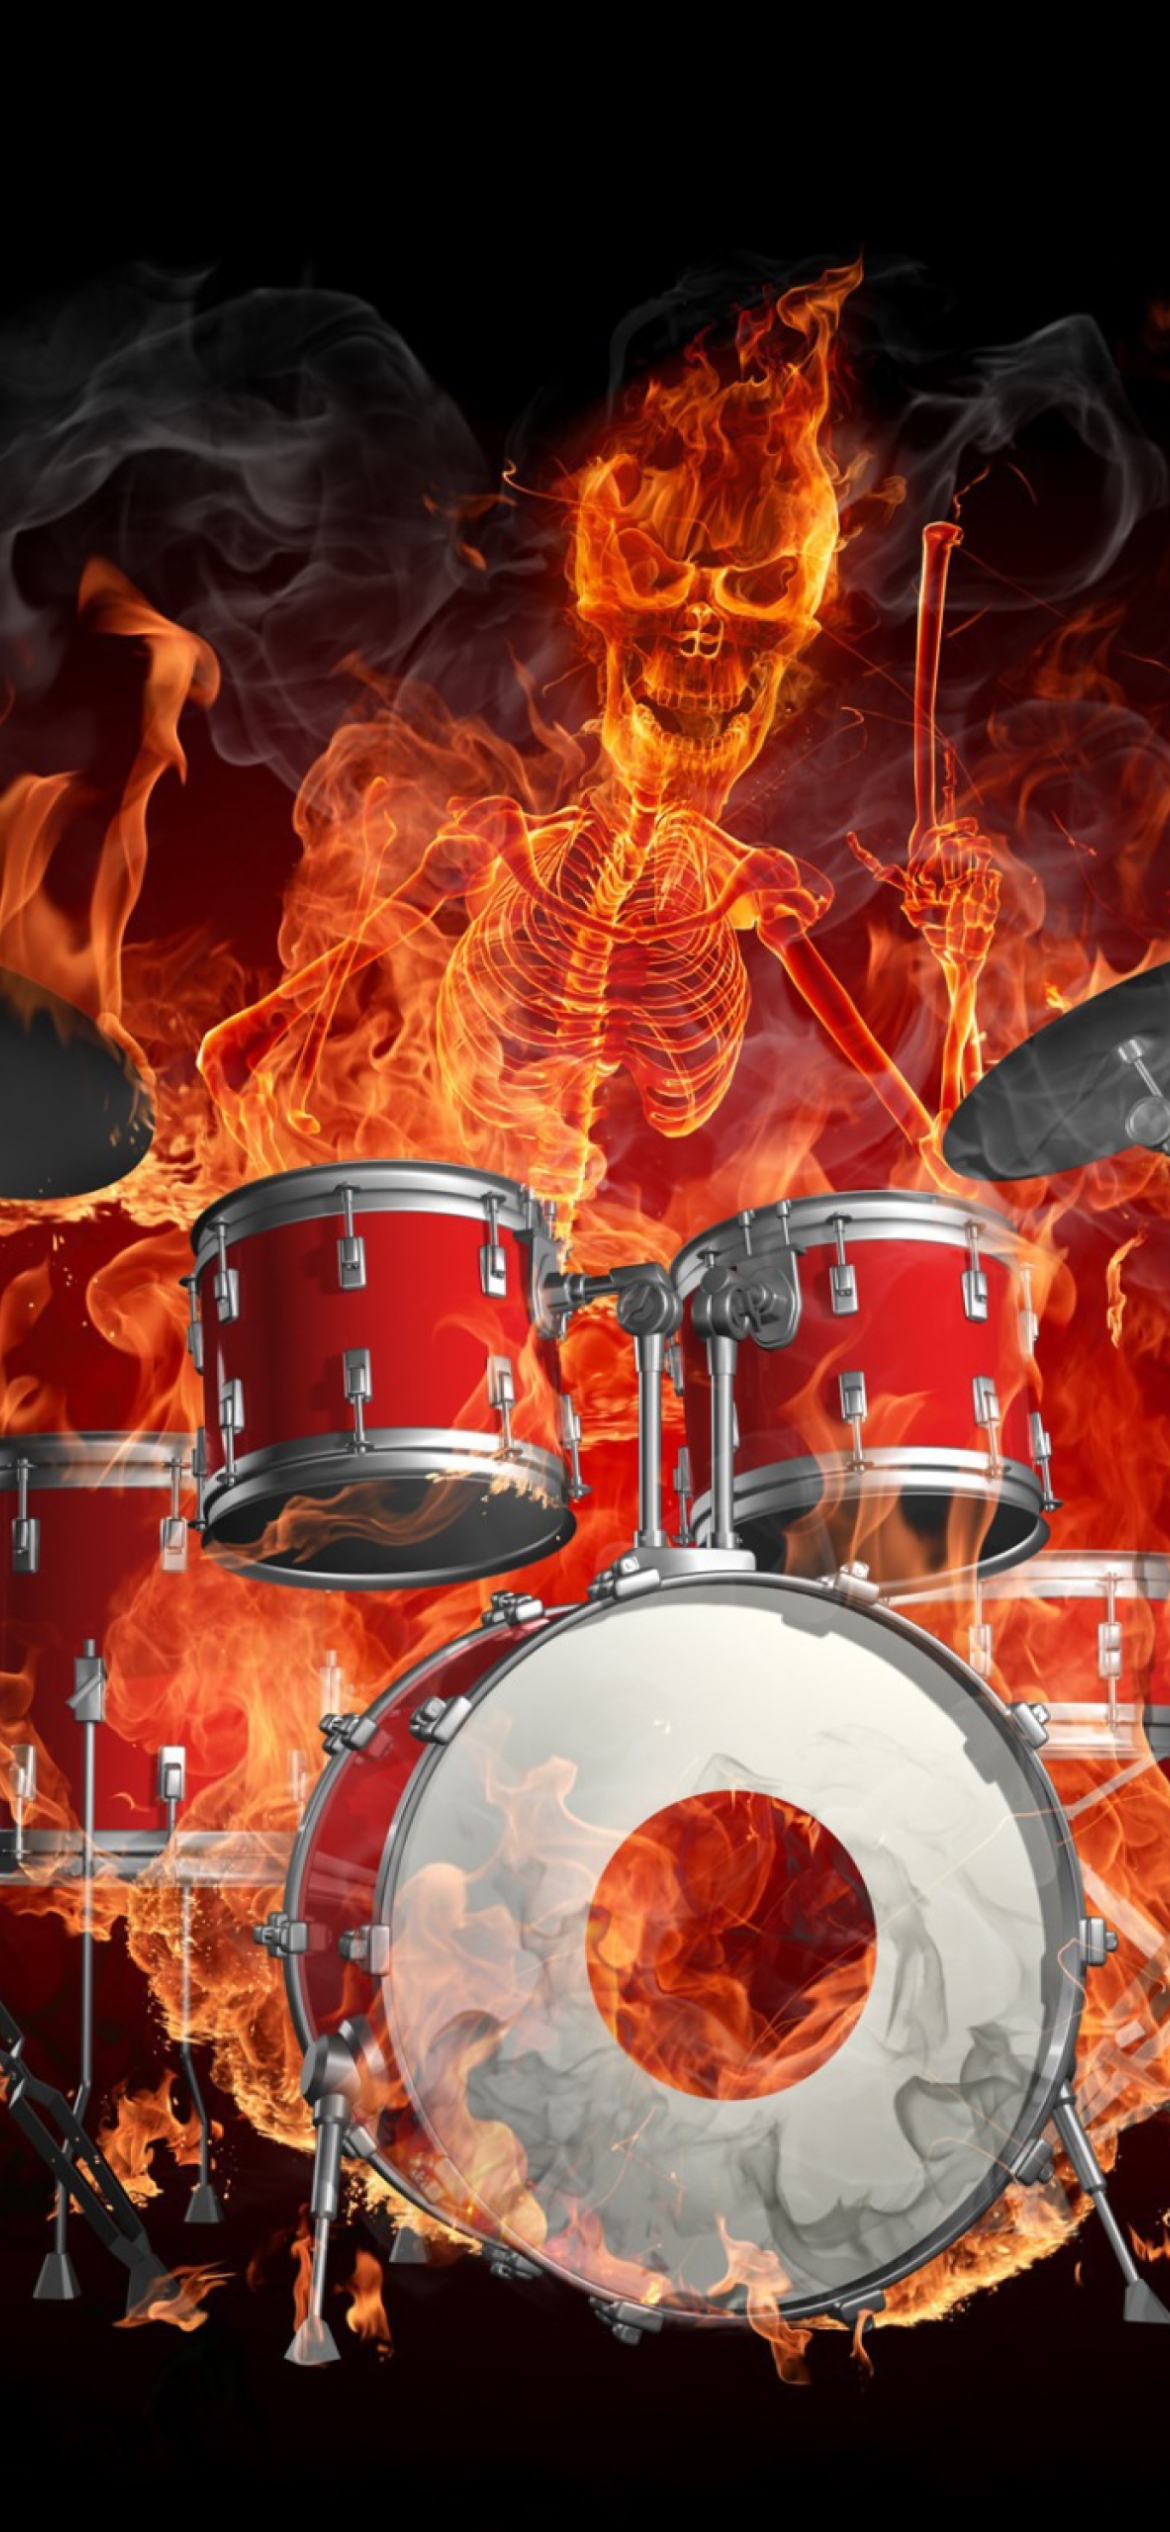 Fire Drummer wallpaper 1170x2532